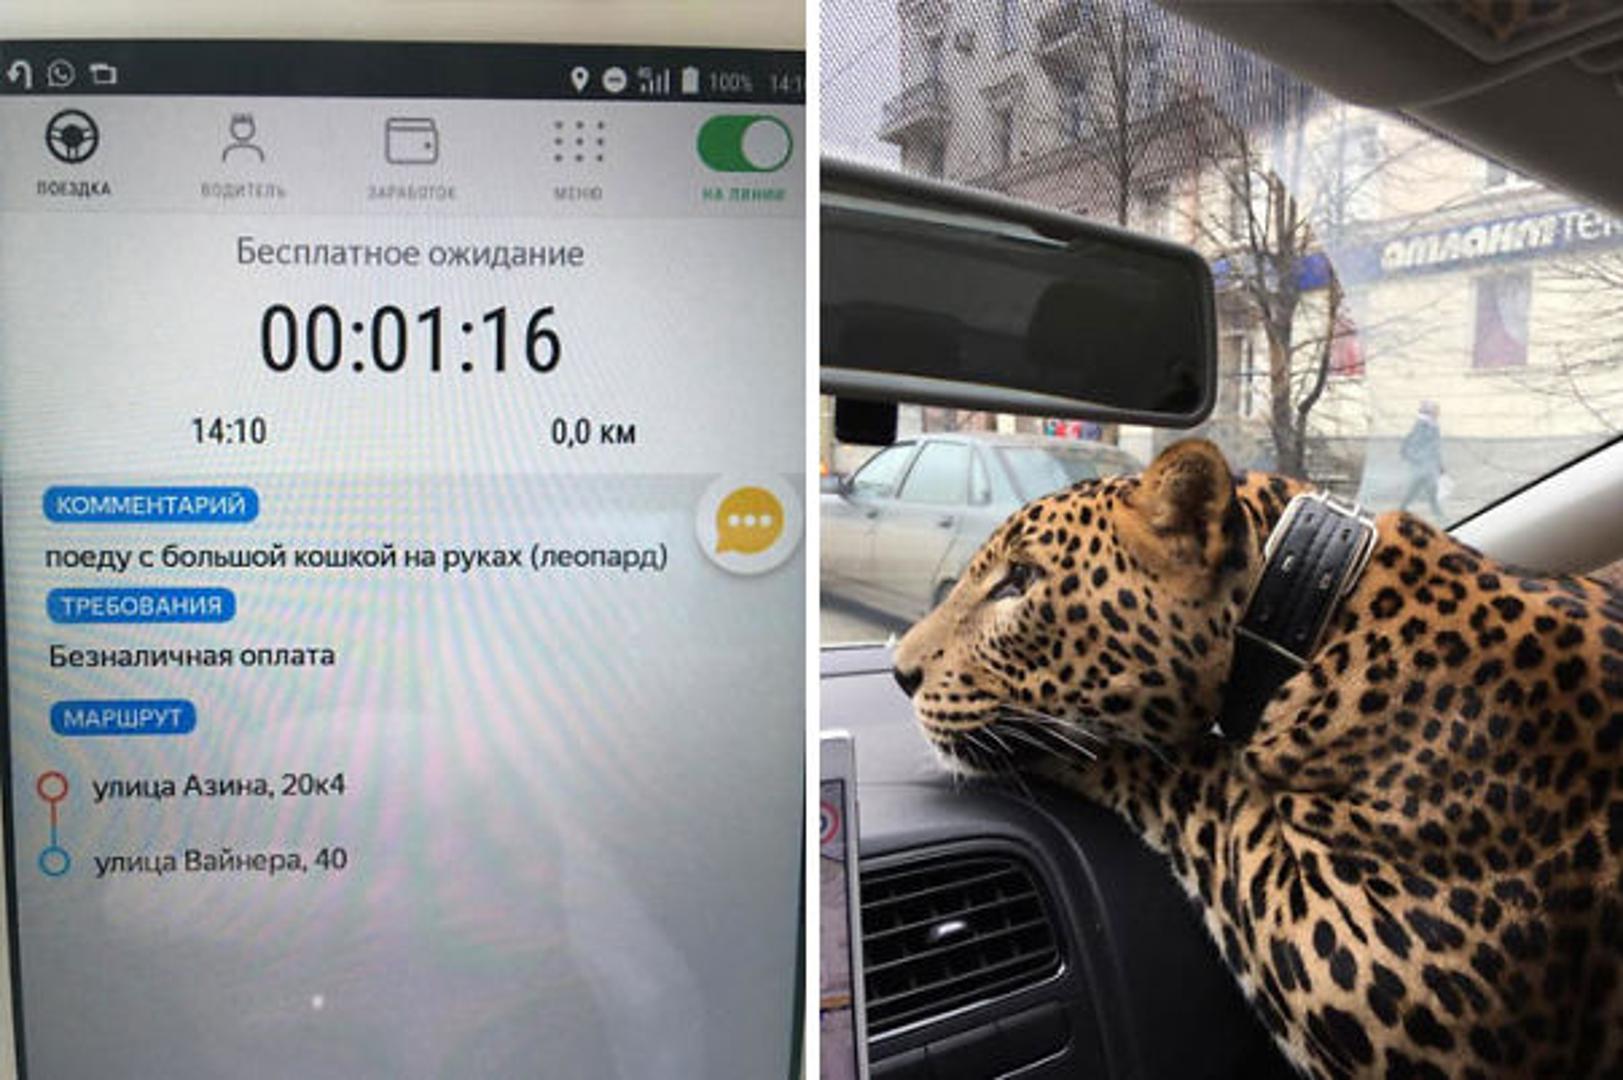 Ovaj je vozač u komentarima na aplikaciji napisao kako će s njim biti "mačka"... Mačka!!